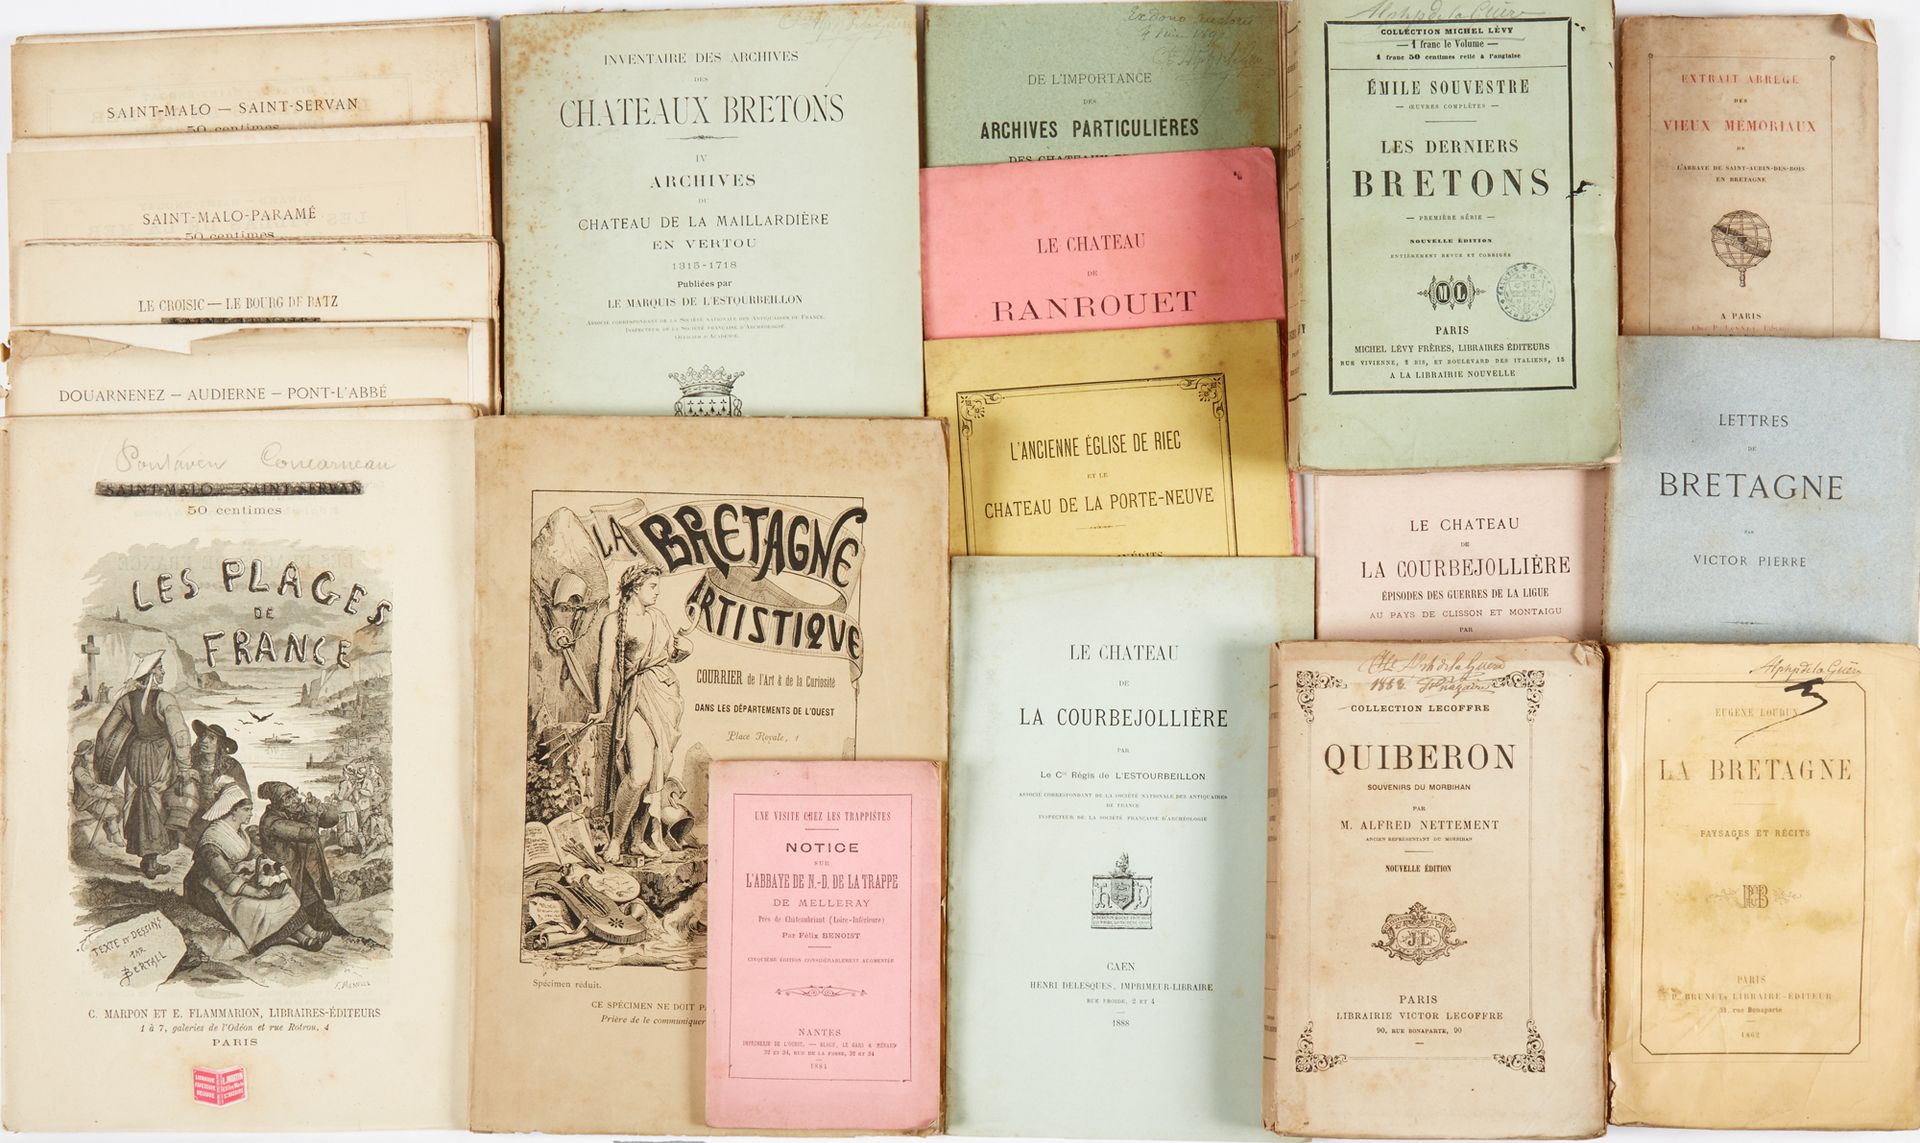 Null Souvenirs de voyages et châteaux bretons. 1 lot de livres brochés :
- SOUVE&hellip;